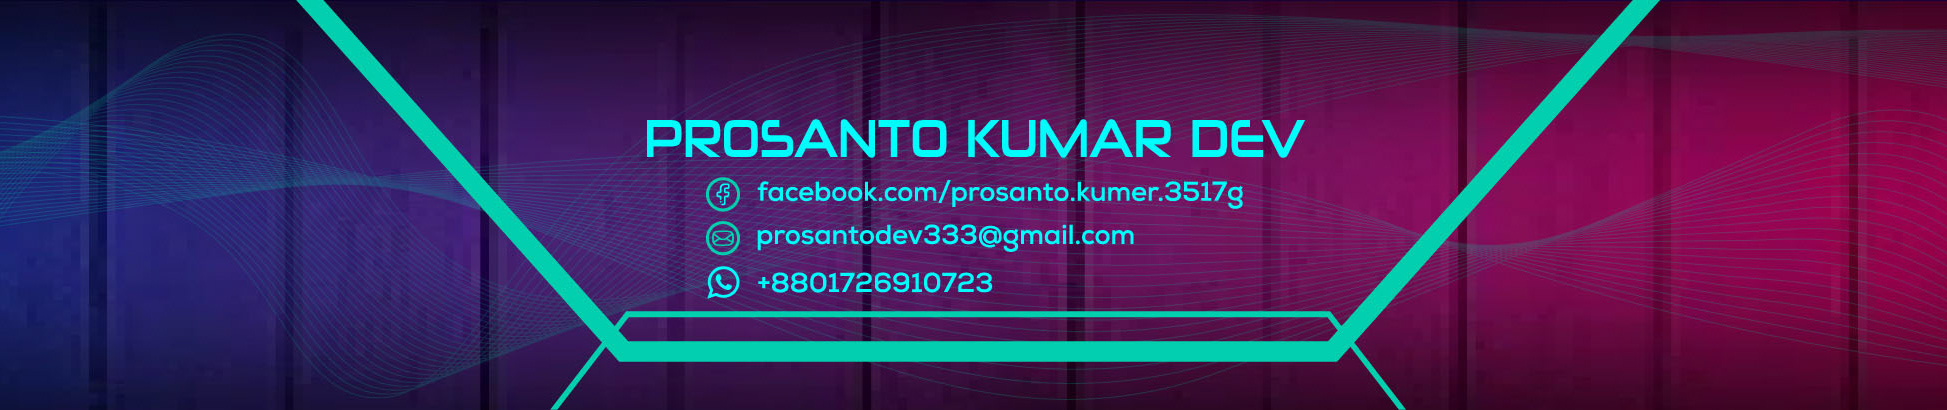 Prosanto Kumar Dev's profile banner